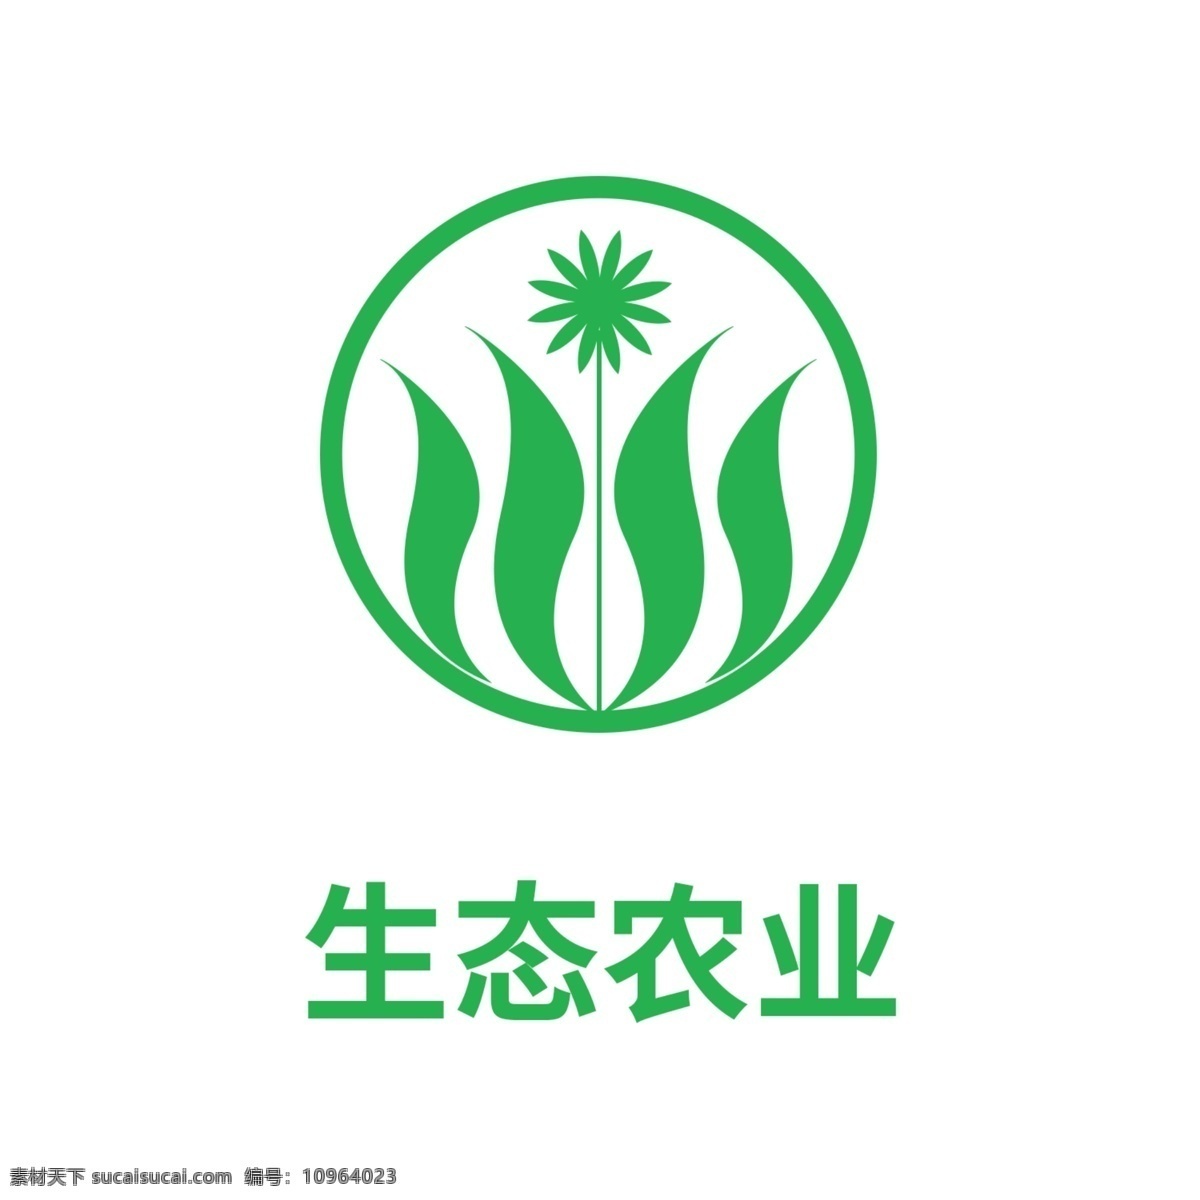 生态农业 logo 标识 农业 简易